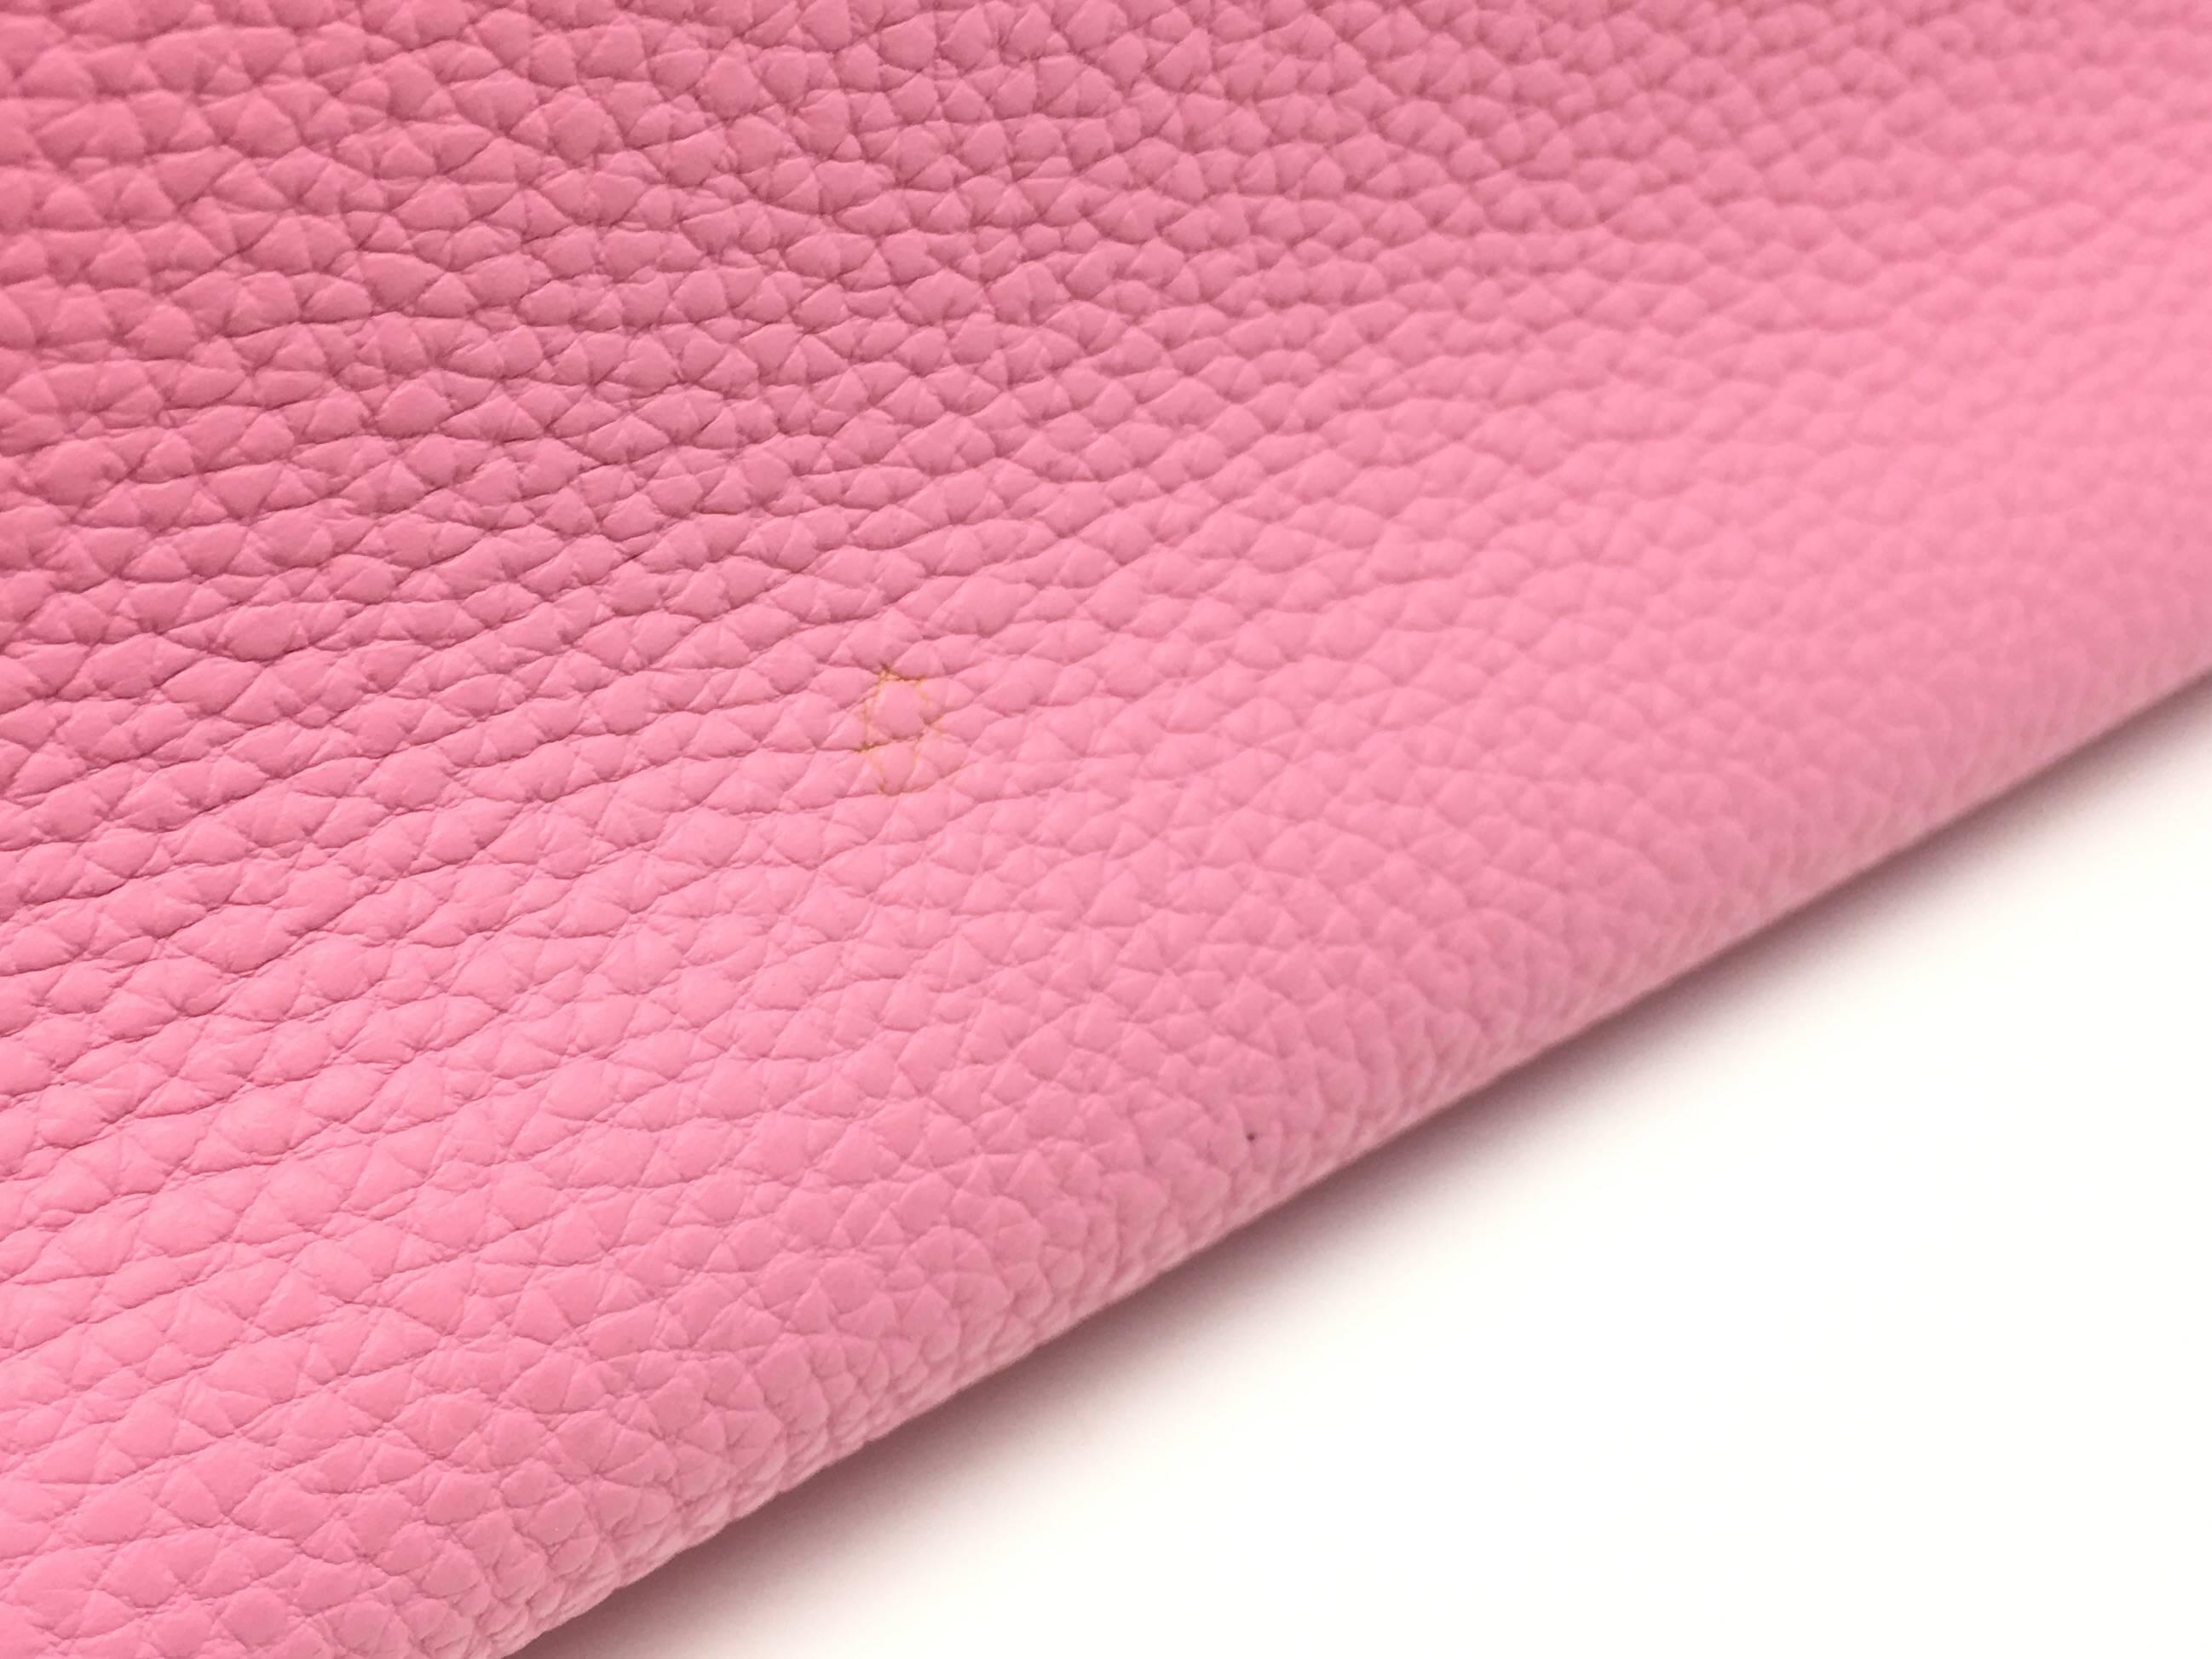 Hermes Birkin 35 Rose Shocking Pink Togo Leather Silver Metal Top Handle Bag 2